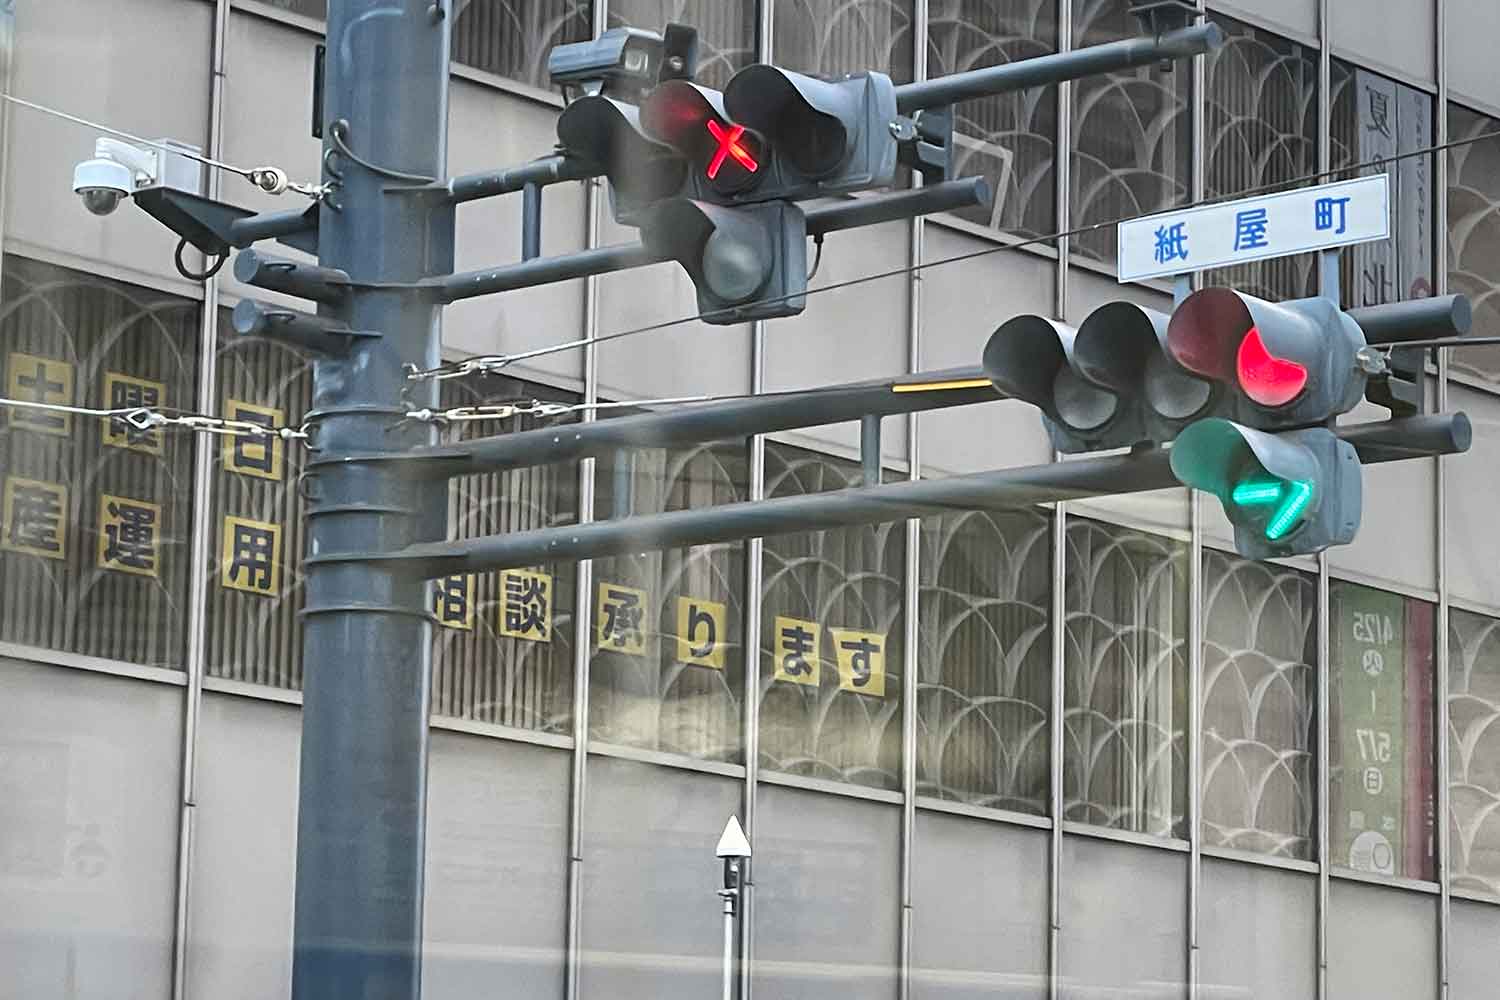 路面電車用の信号機に赤い×が点灯している写真